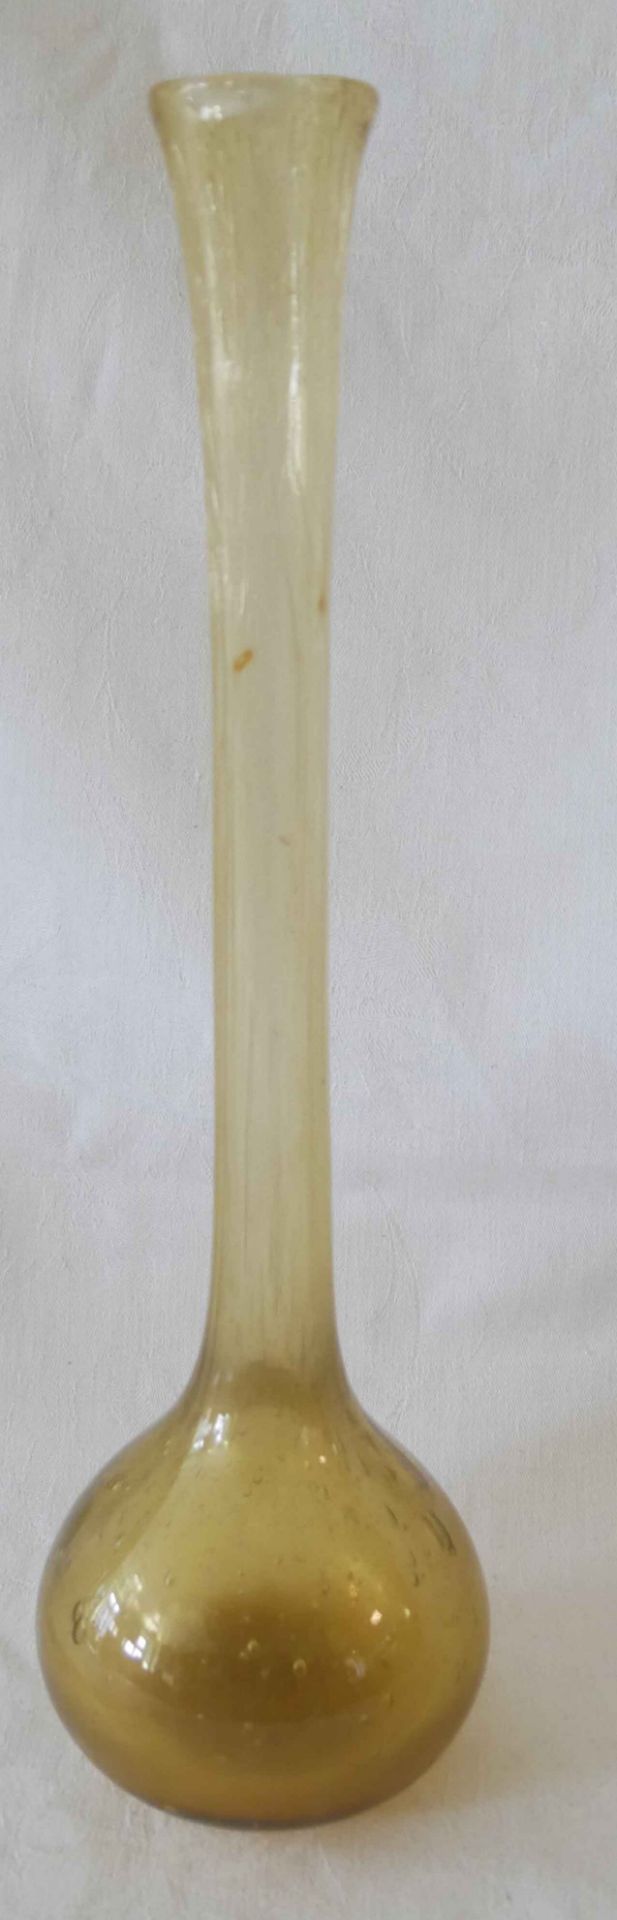 Glasvase, bernsteinfarben mit Lufteinschlüssen, wohl Böhmen. Höhe ca. 36 cm